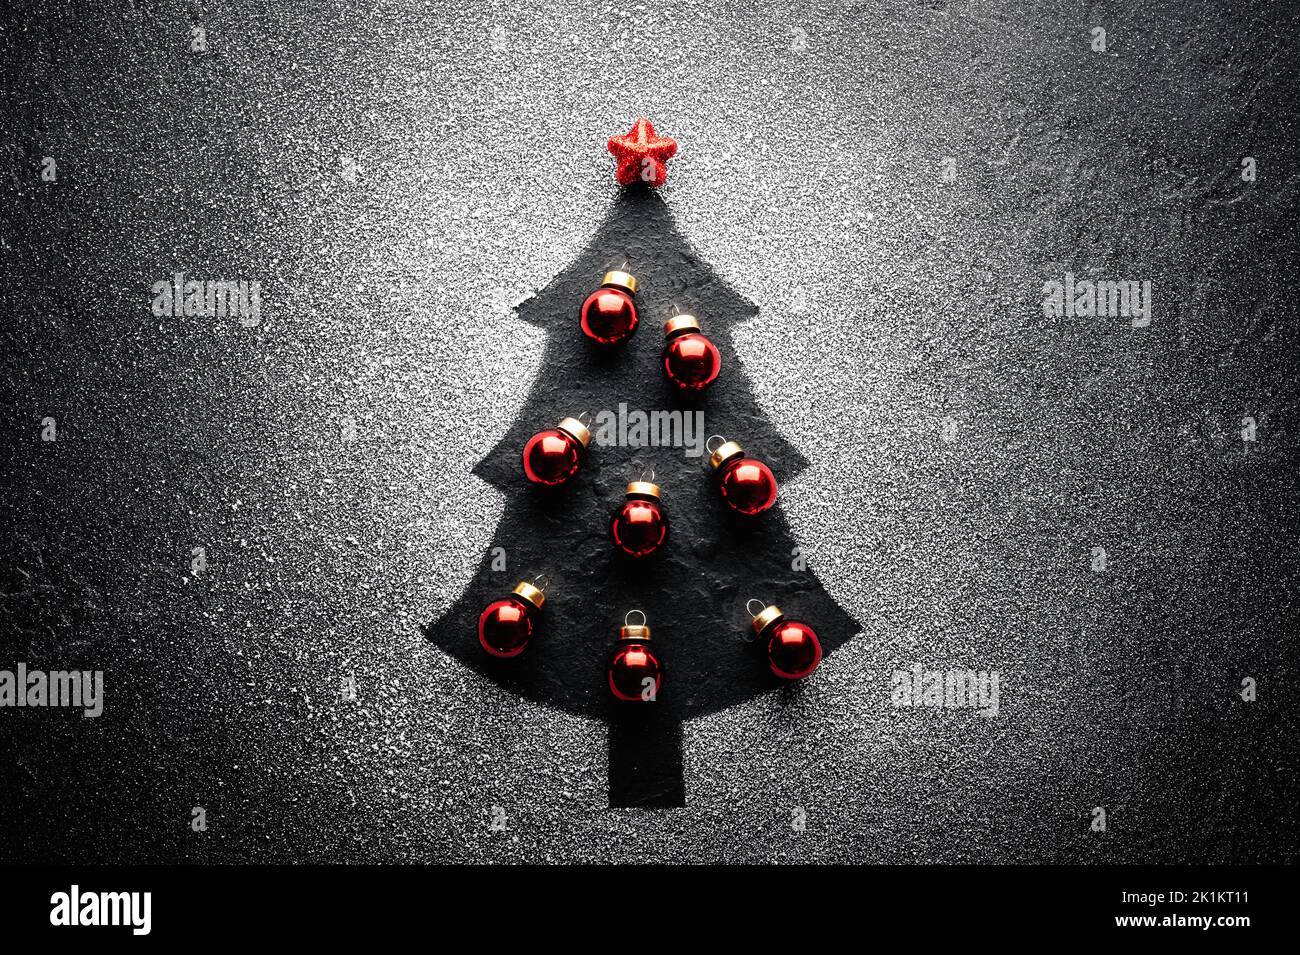 Arbre de Noël décoré avec des boules rouges et une étoile sur le dessus créée à partir de neige artificielle sur fond noir. Concept vacances d'hiver Banque D'Images